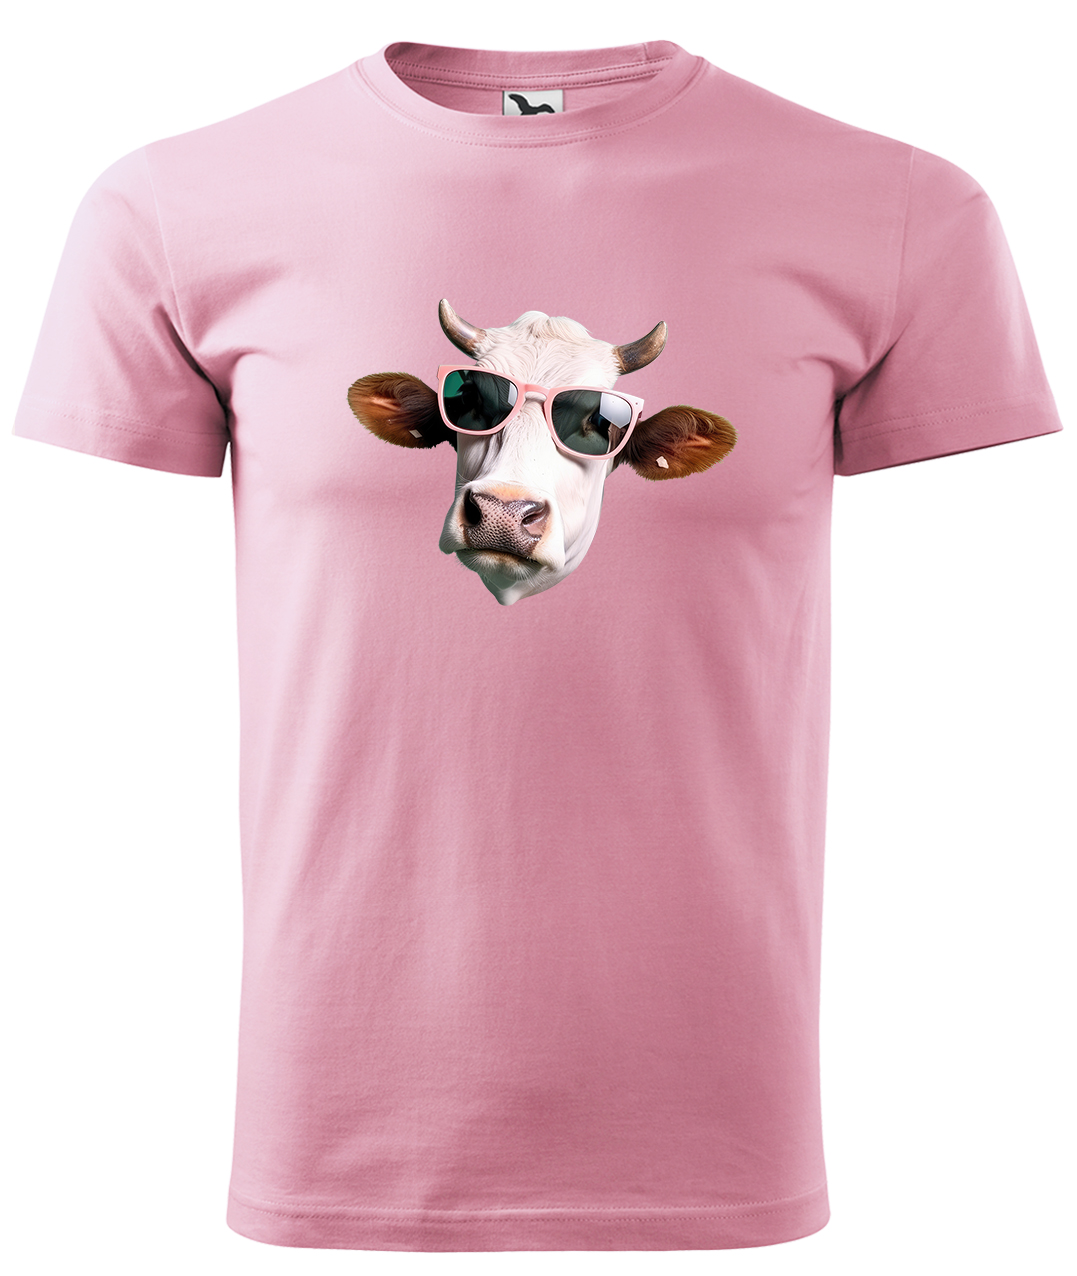 Dětské tričko s krávou - Kráva v brýlích Velikost: 10 let / 146 cm, Barva: Růžová (30), Délka rukávu: Krátký rukáv